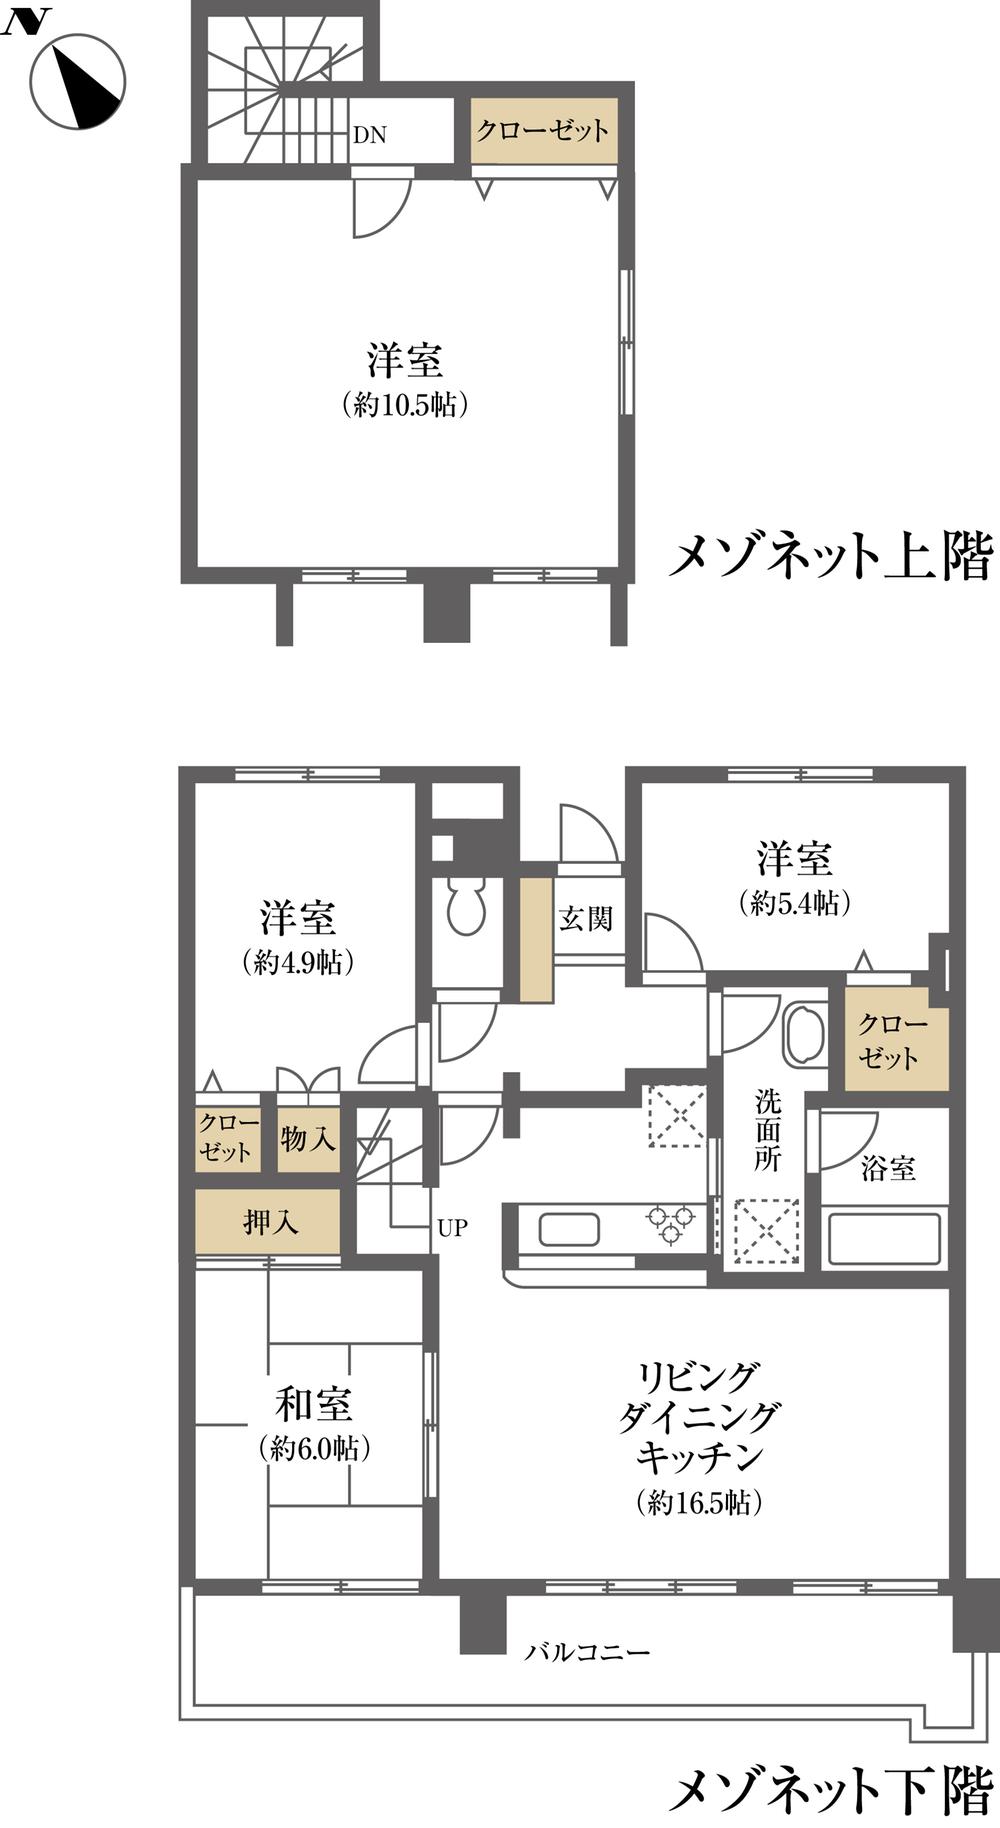 Floor plan. 4LDK, Price 29,800,000 yen, Occupied area 88.84 sq m , Balcony area 14.32 sq m floor plan